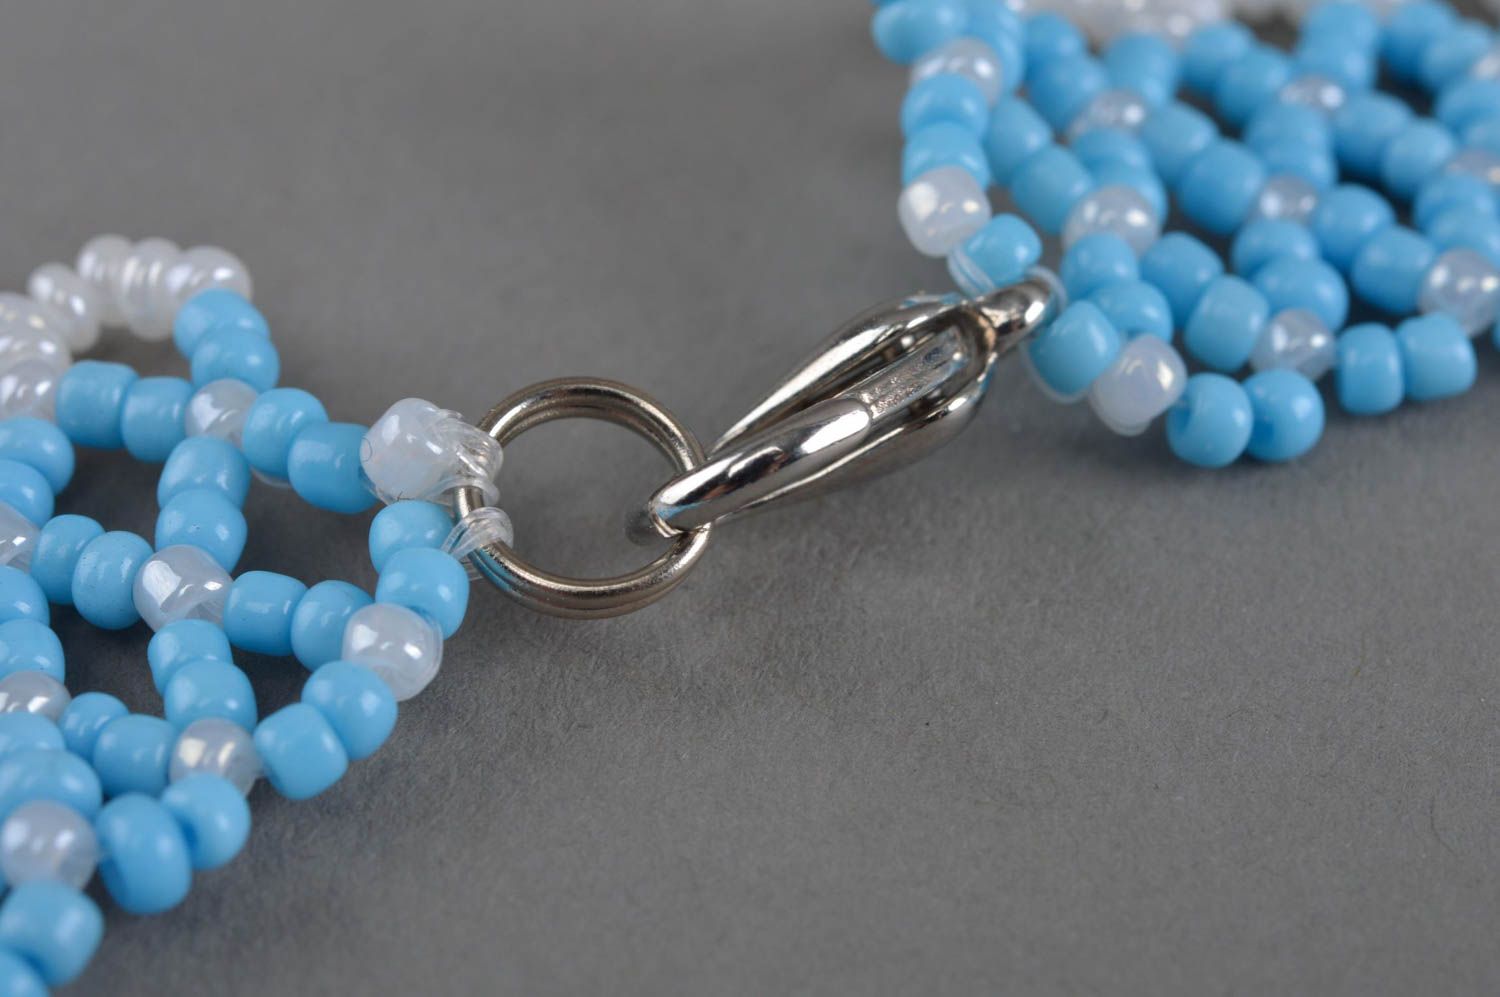 Ожерелье из бисера авторского дизайна голубое с белым красивое ажурное хэнд мейд фото 4